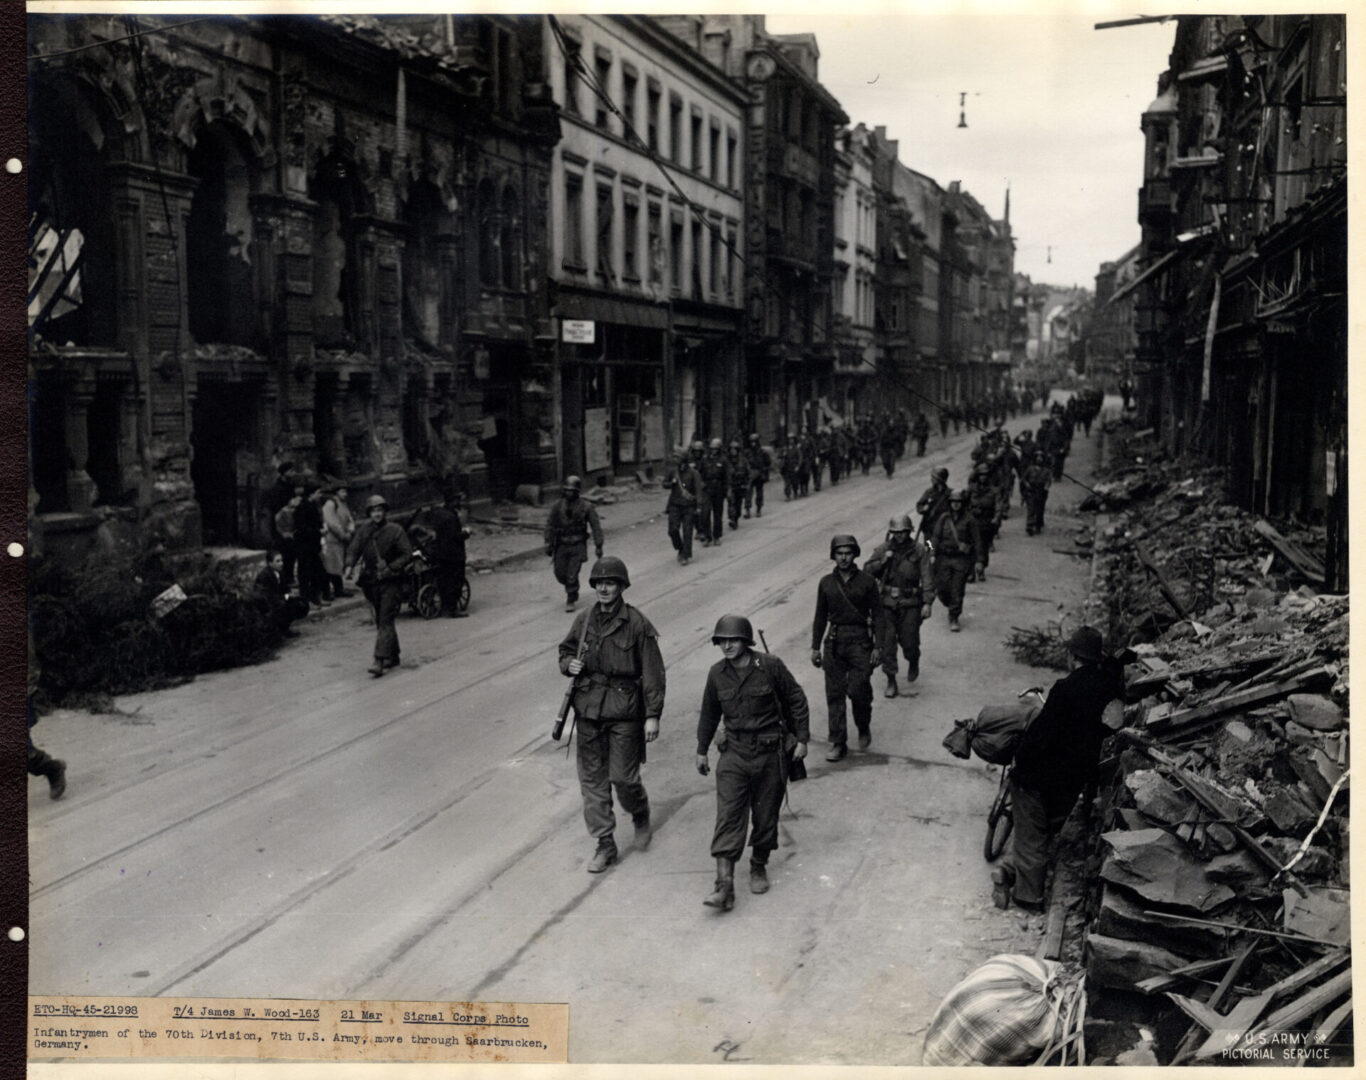 American troops move through Saarbrucken, Germany